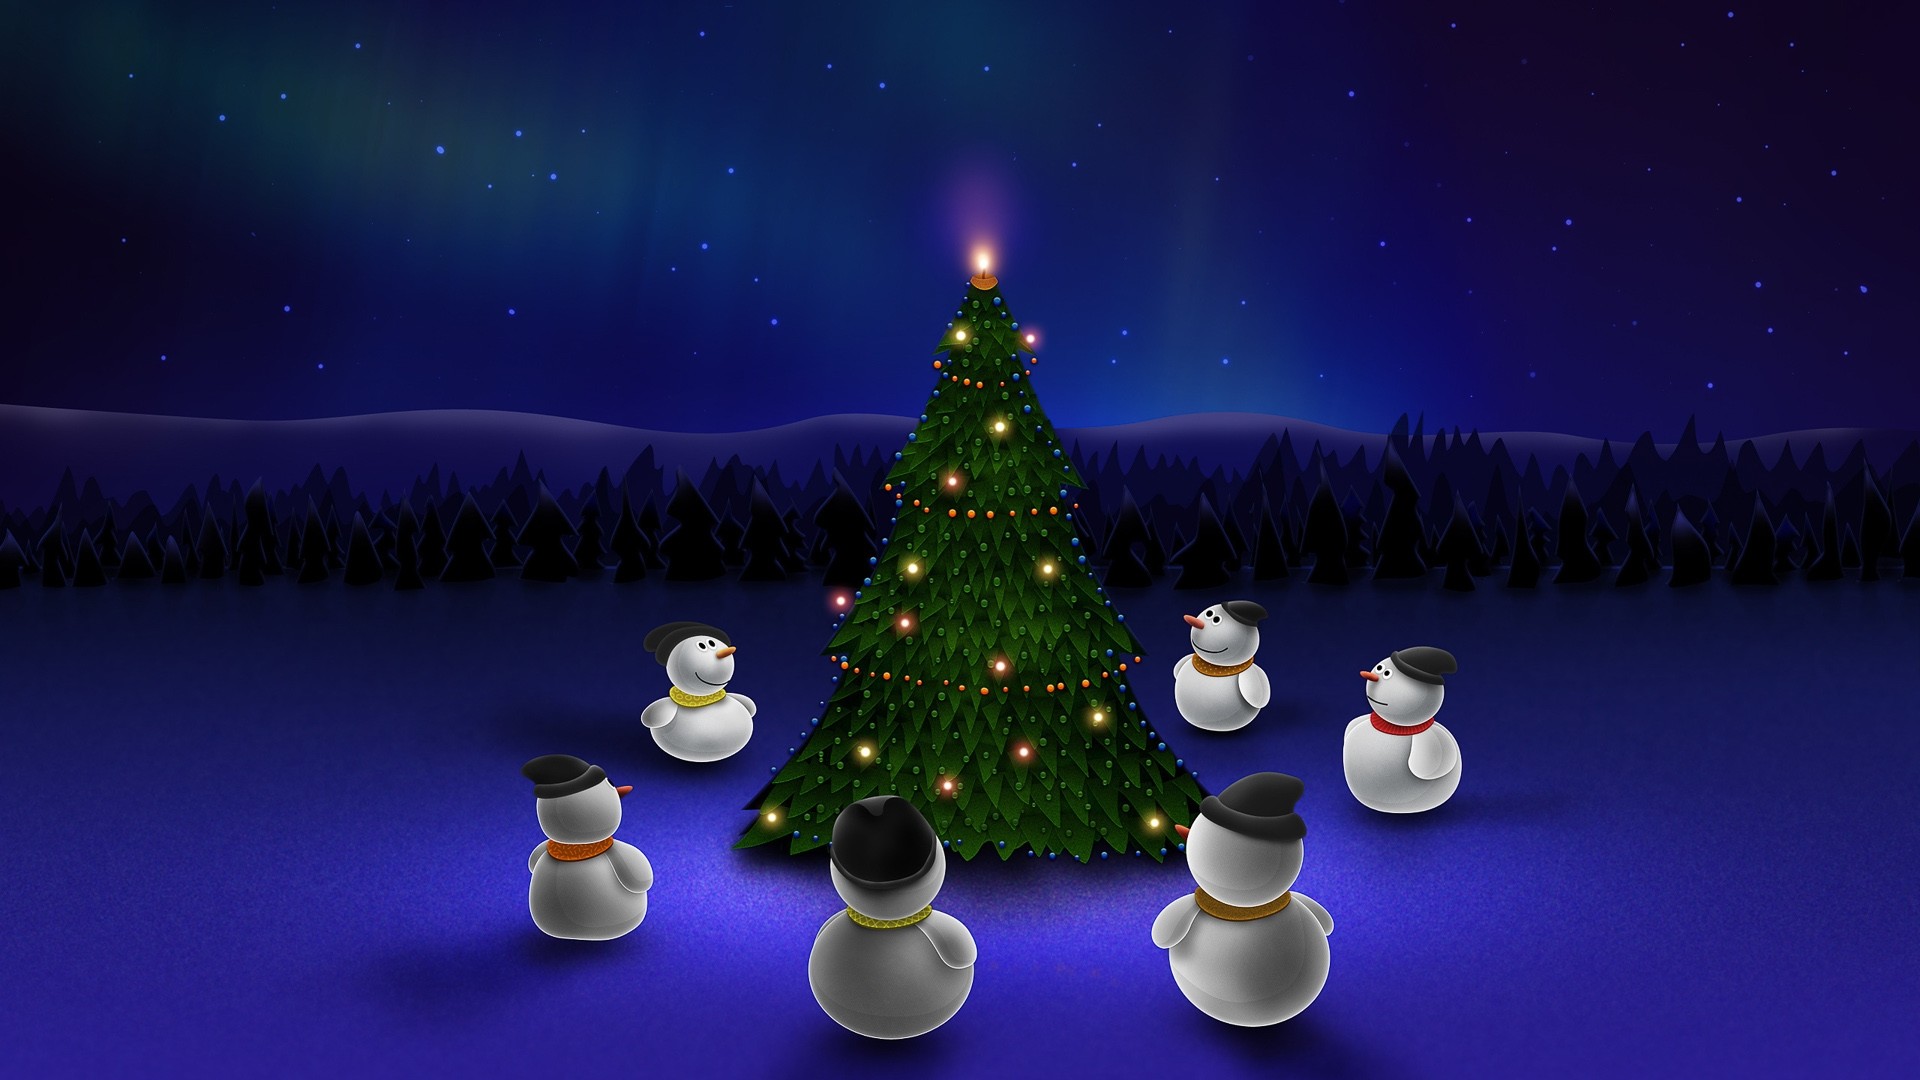 Animated Christmas Wallpaper For Desktop